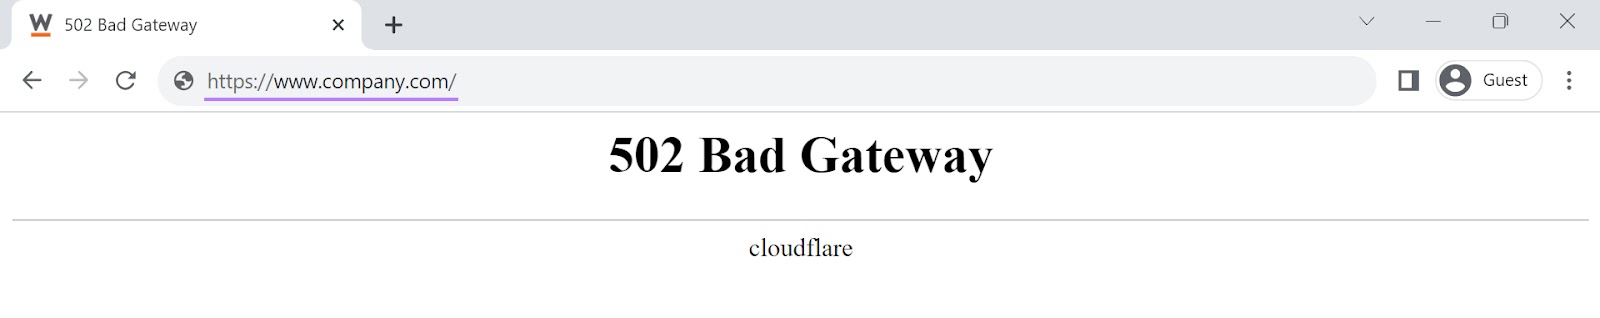 A 502 bad gateway error page